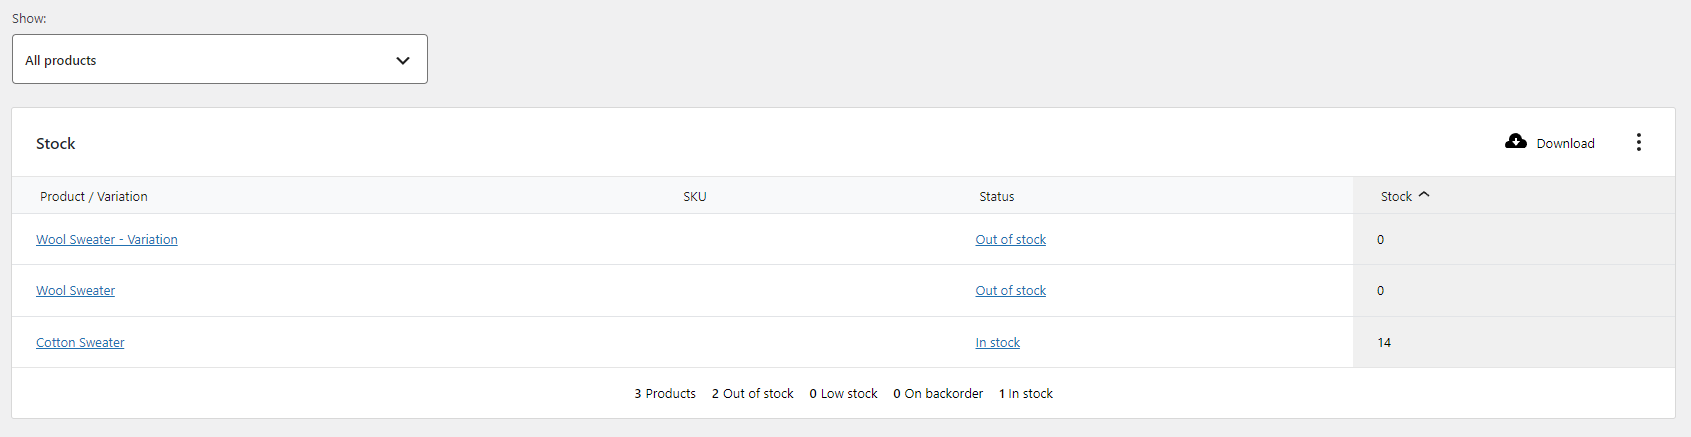 Affichage des rapports sur l'état des stocks dans WooCommerce.